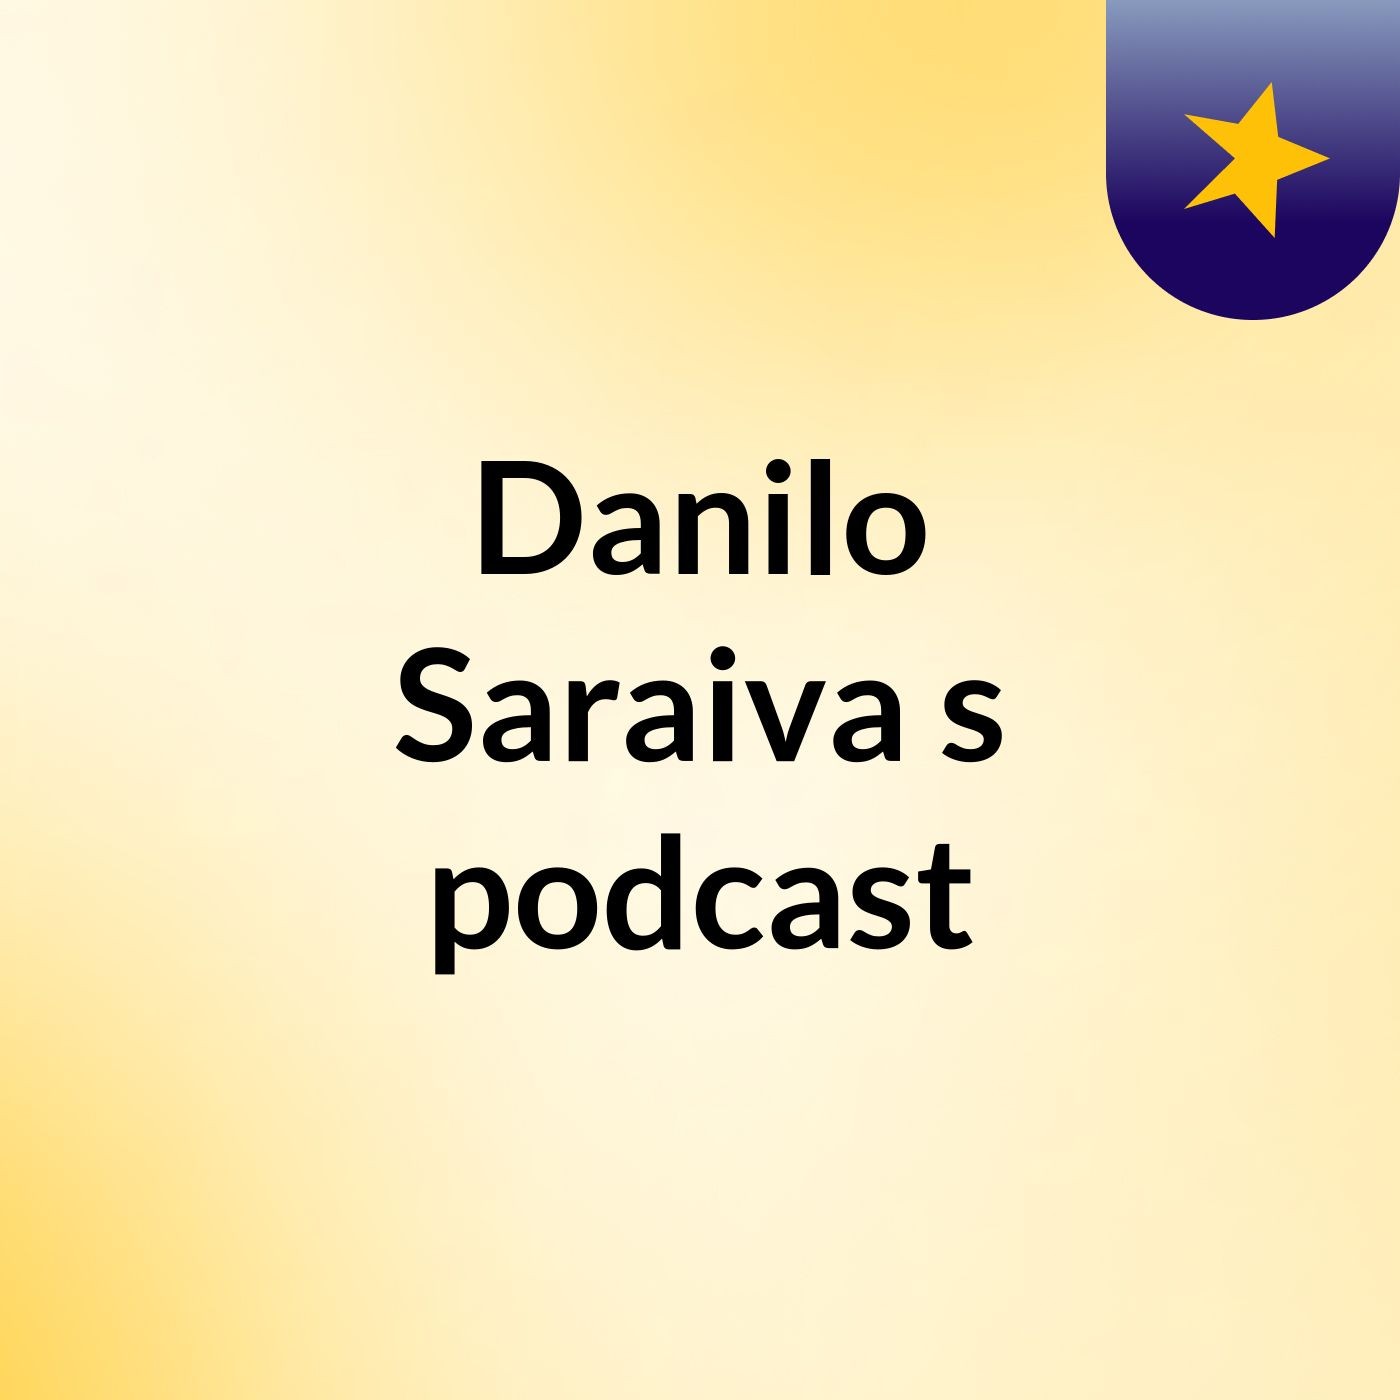 Danilo Saraiva's podcast